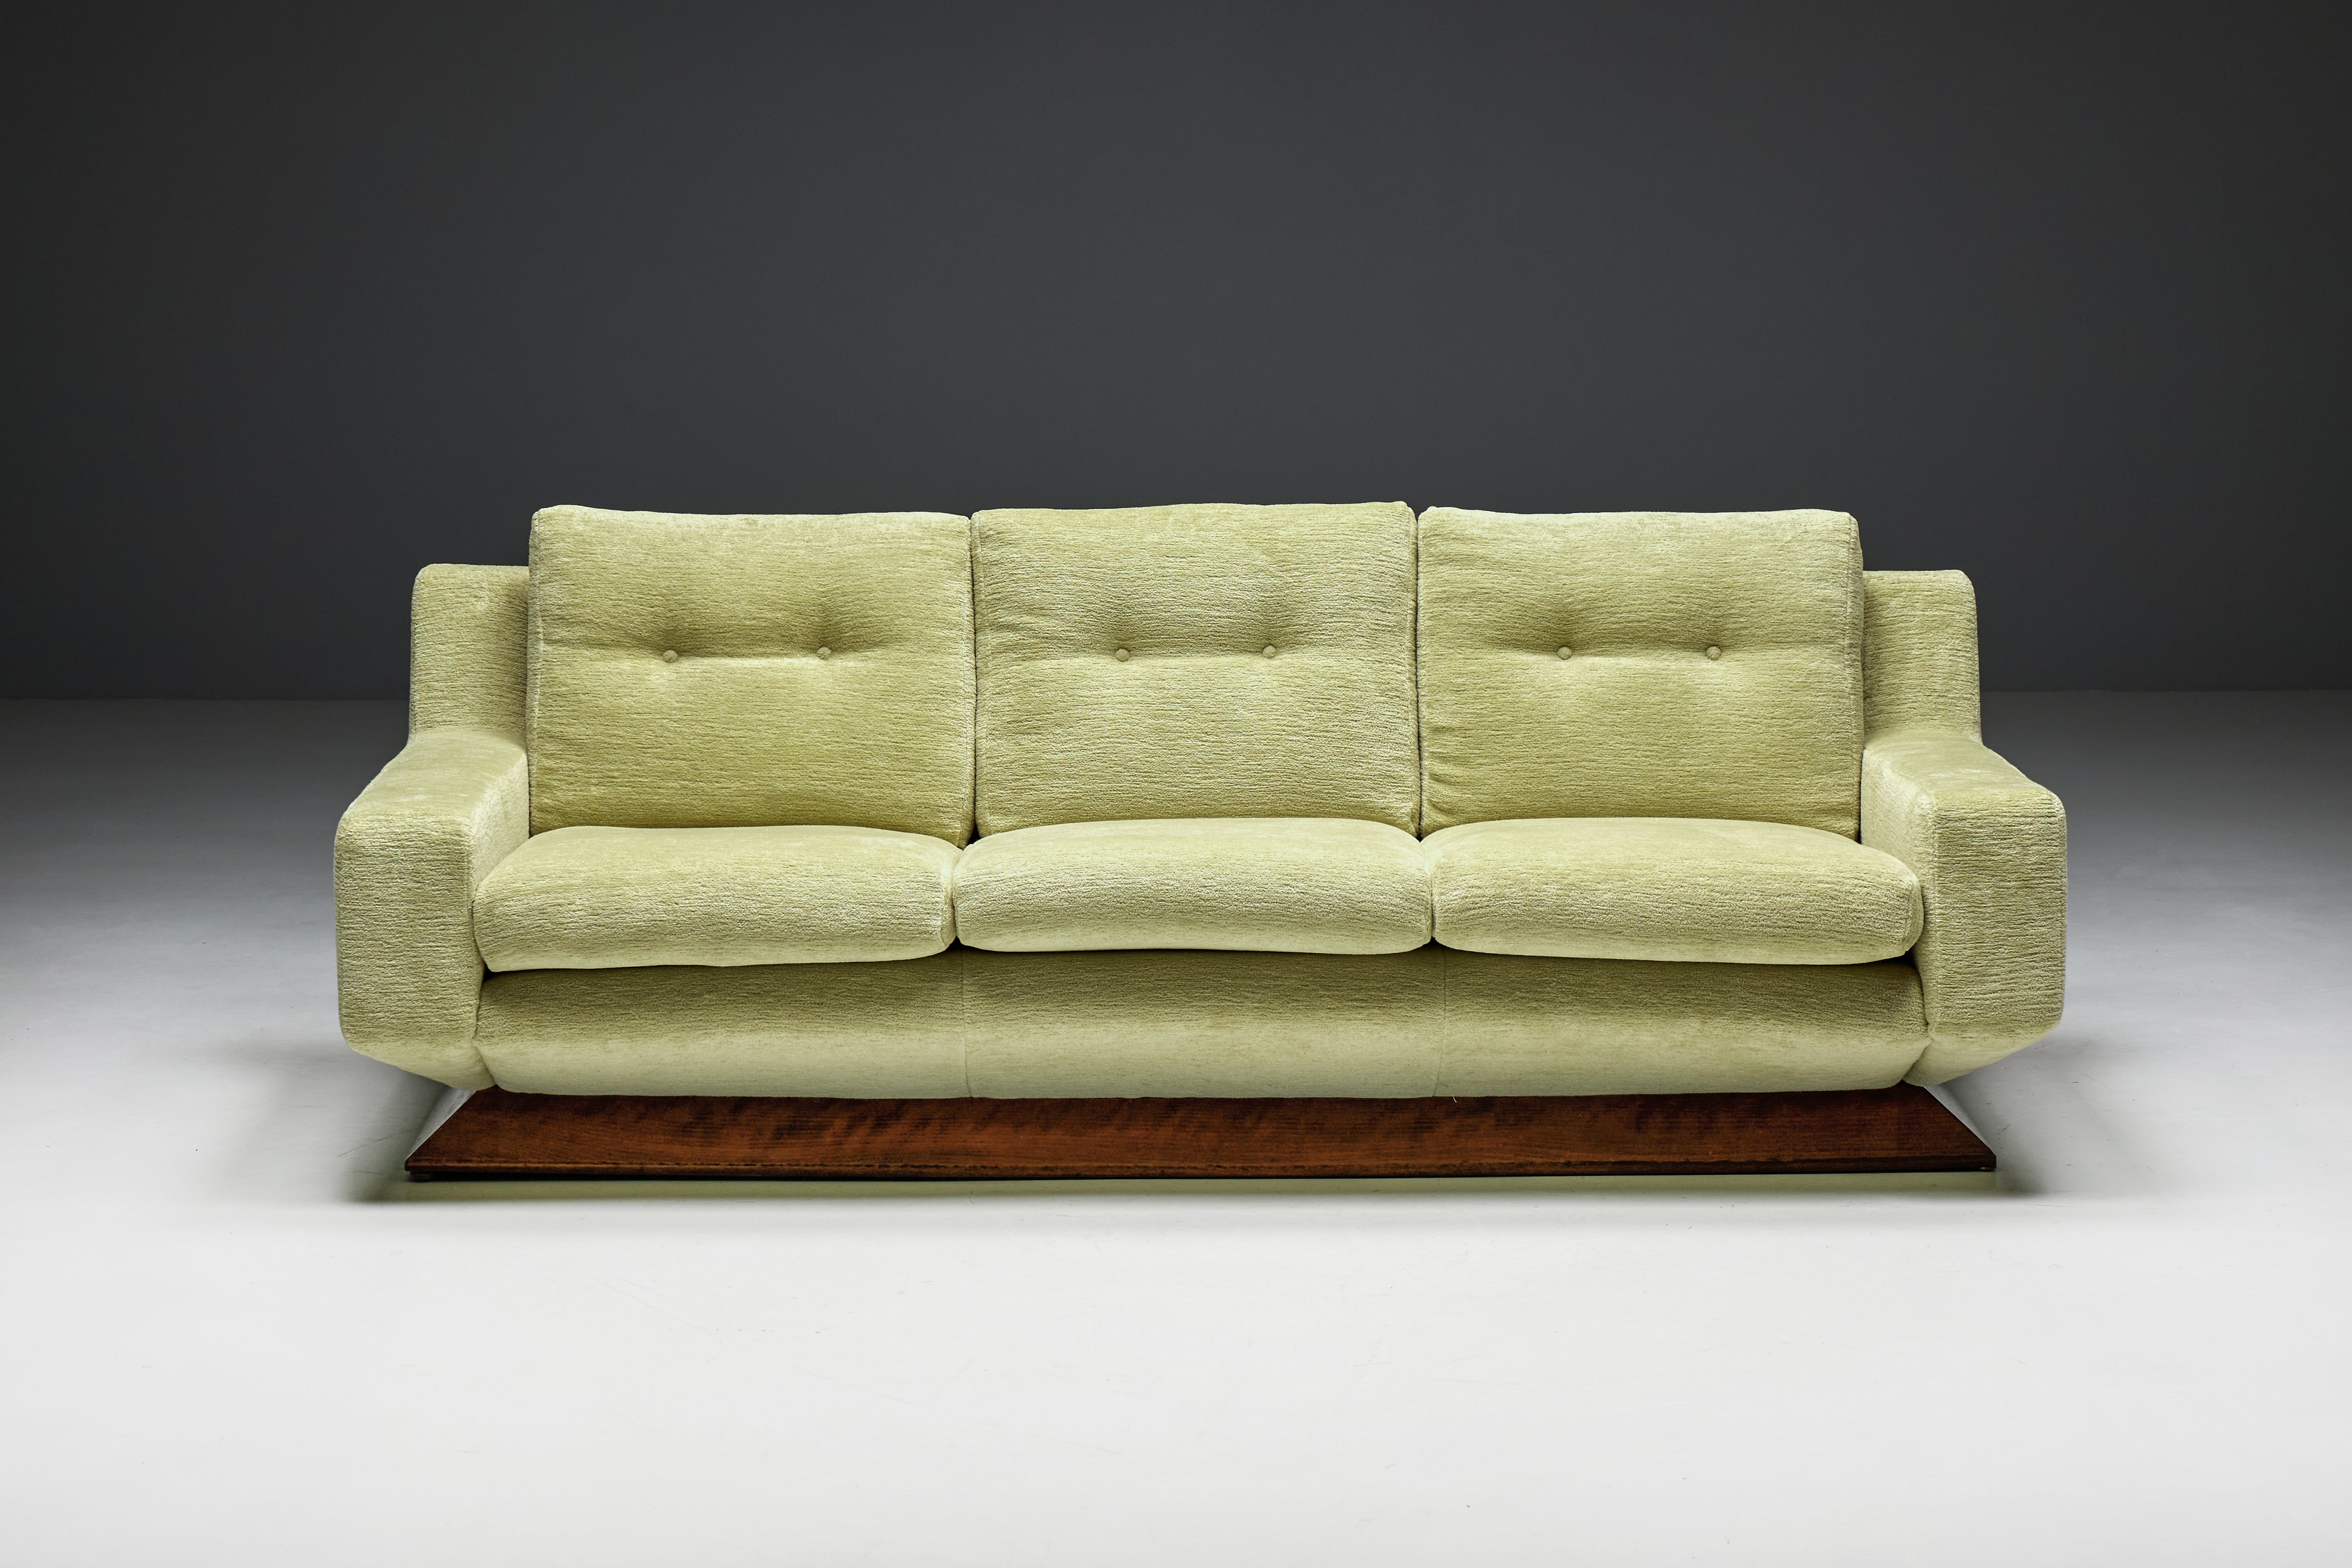 Exquisites Sofa, umhüllt von einem raffinierten Chenille-Stoff von Pierre Frey in dem faszinierenden Farbton Titteul, der früher dem berühmten Marc Lagrange gehörte. Dieses italienische Sofa mit seinen markanten, kantigen Formen und faszinierenden